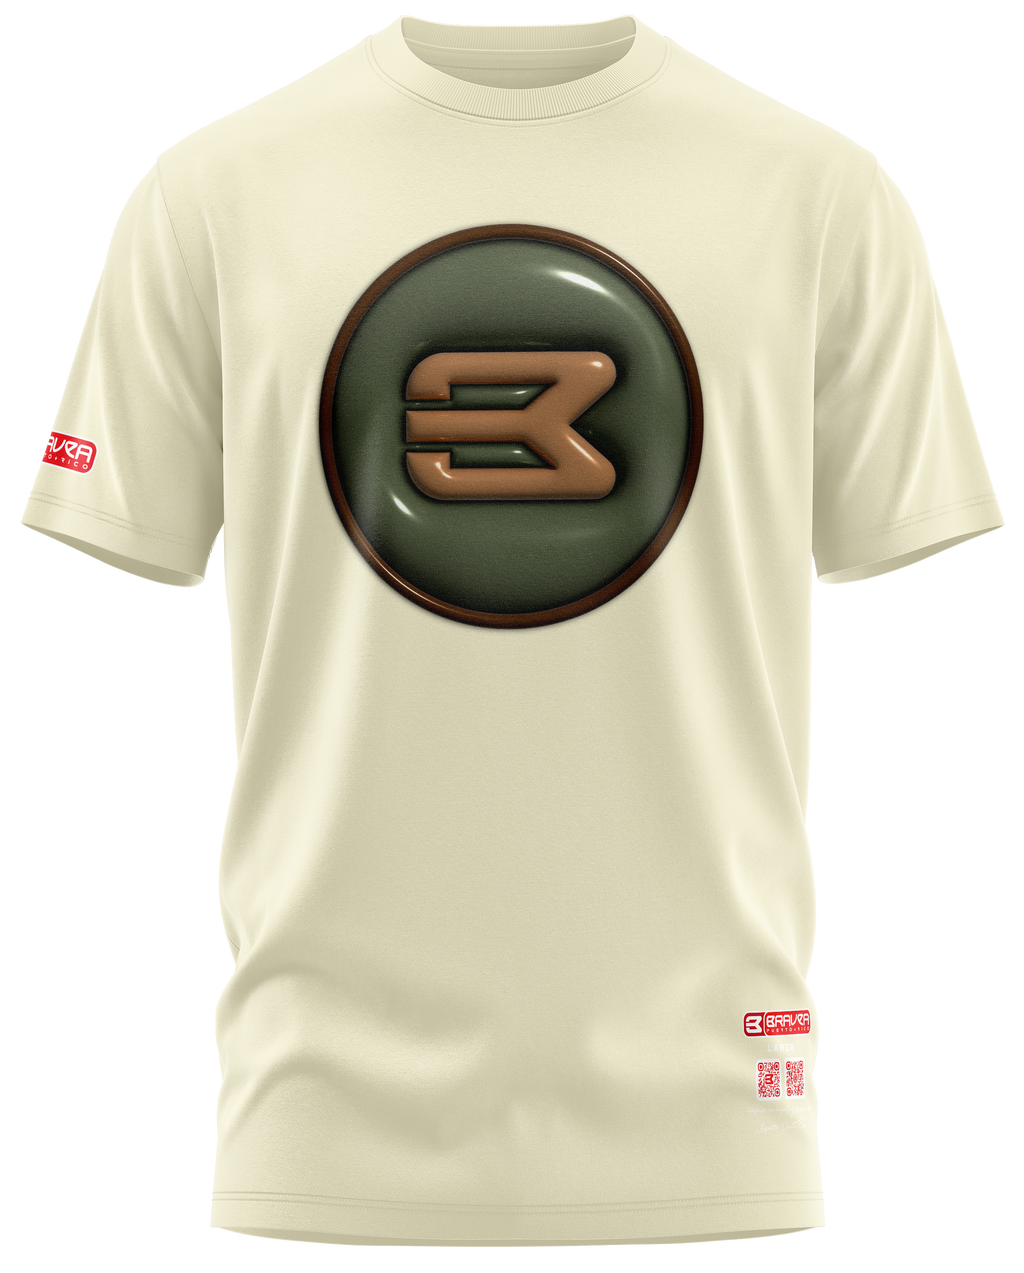 Bravea Button T-Shirt Olive